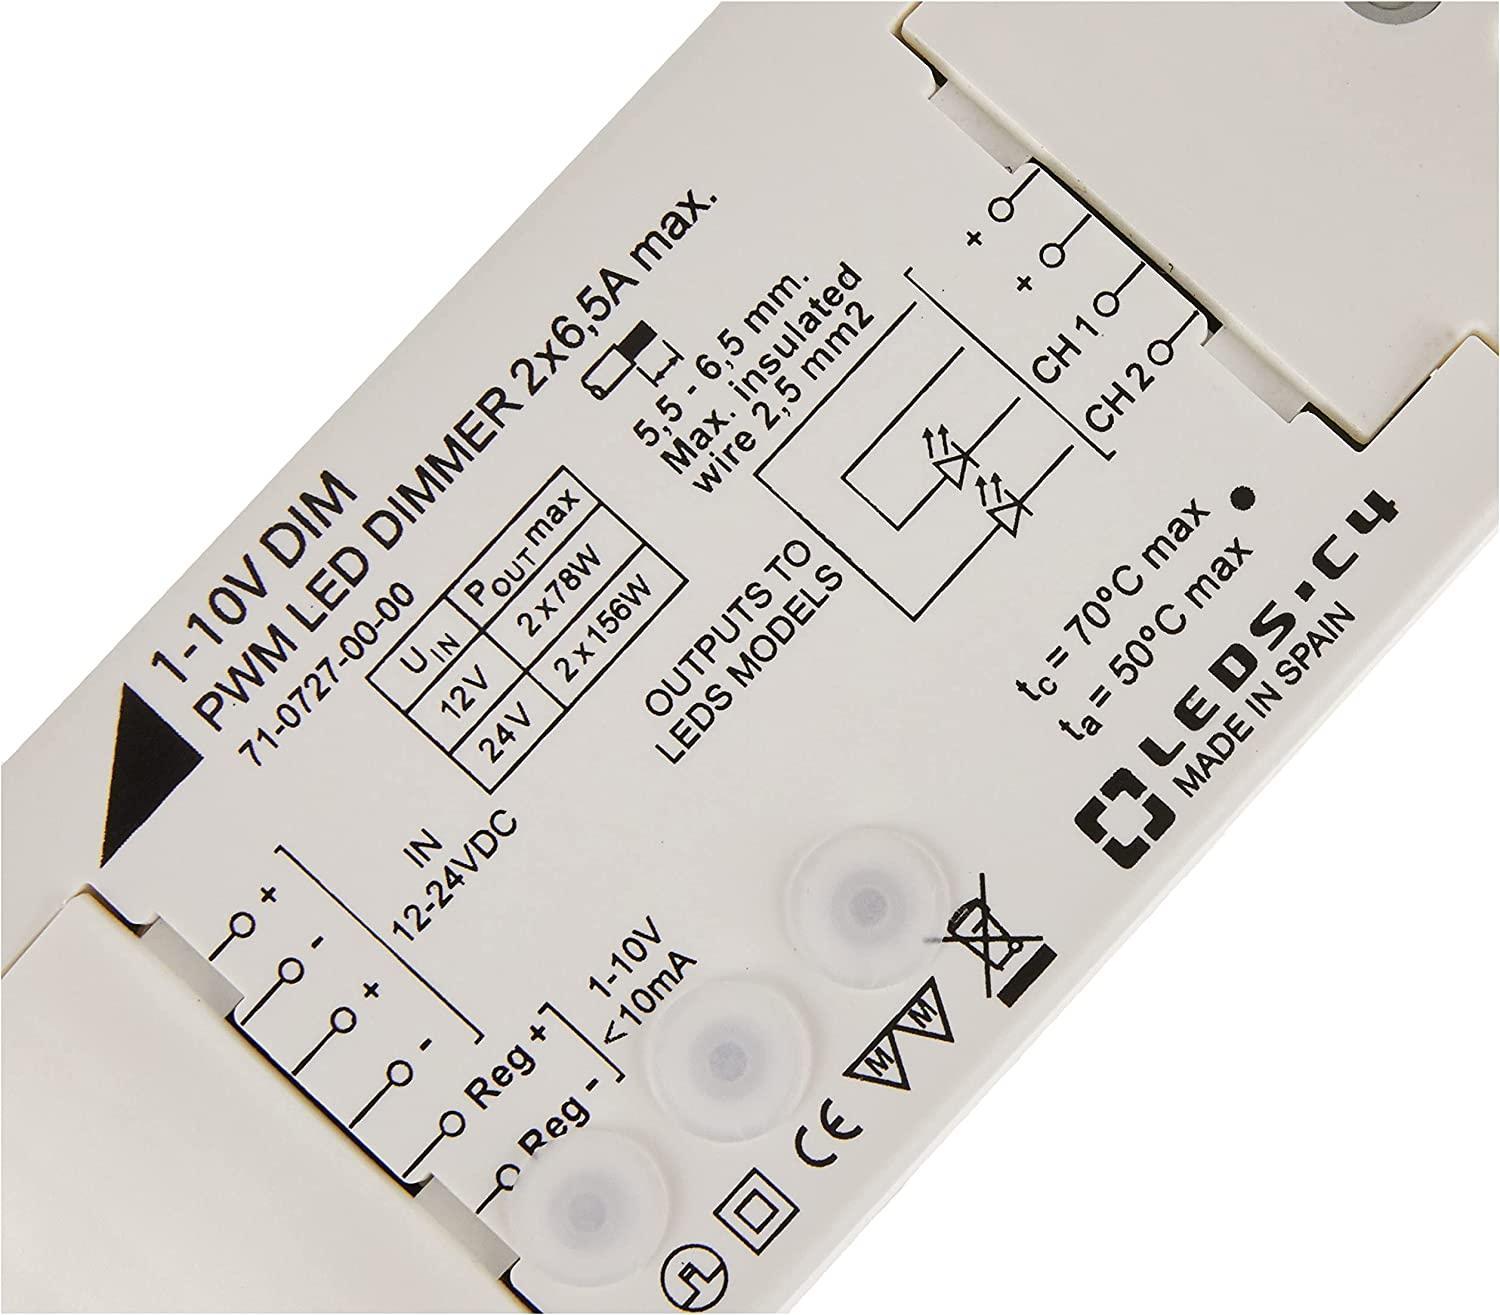 Trasformatore dimmer per luci led LEDS C4 71-0727-00-00, 1-10V / 60-120W / 12-24V.